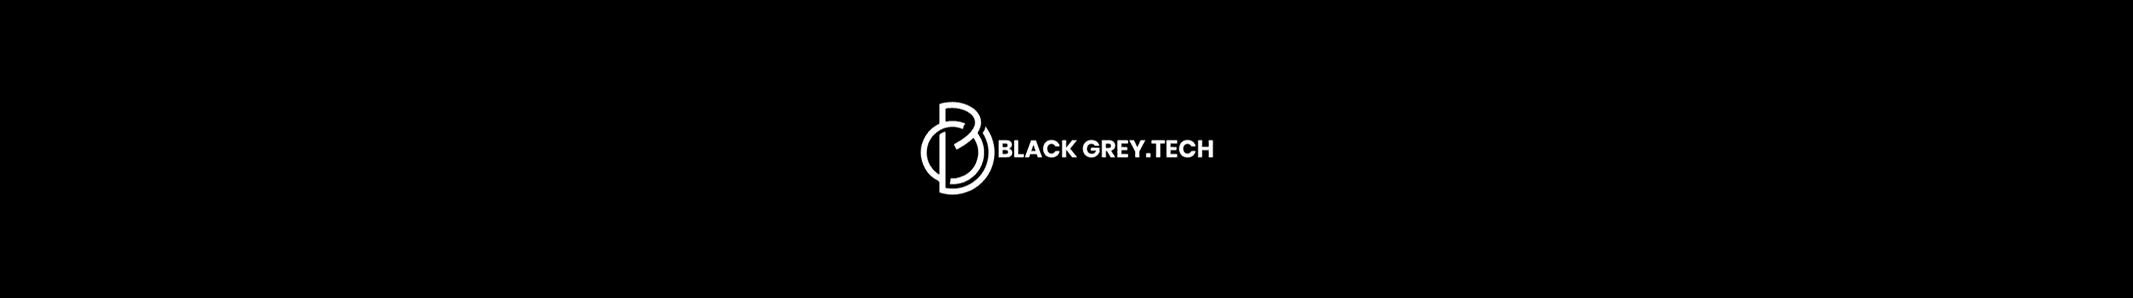 BlackGrey.tech LLC profil başlığı